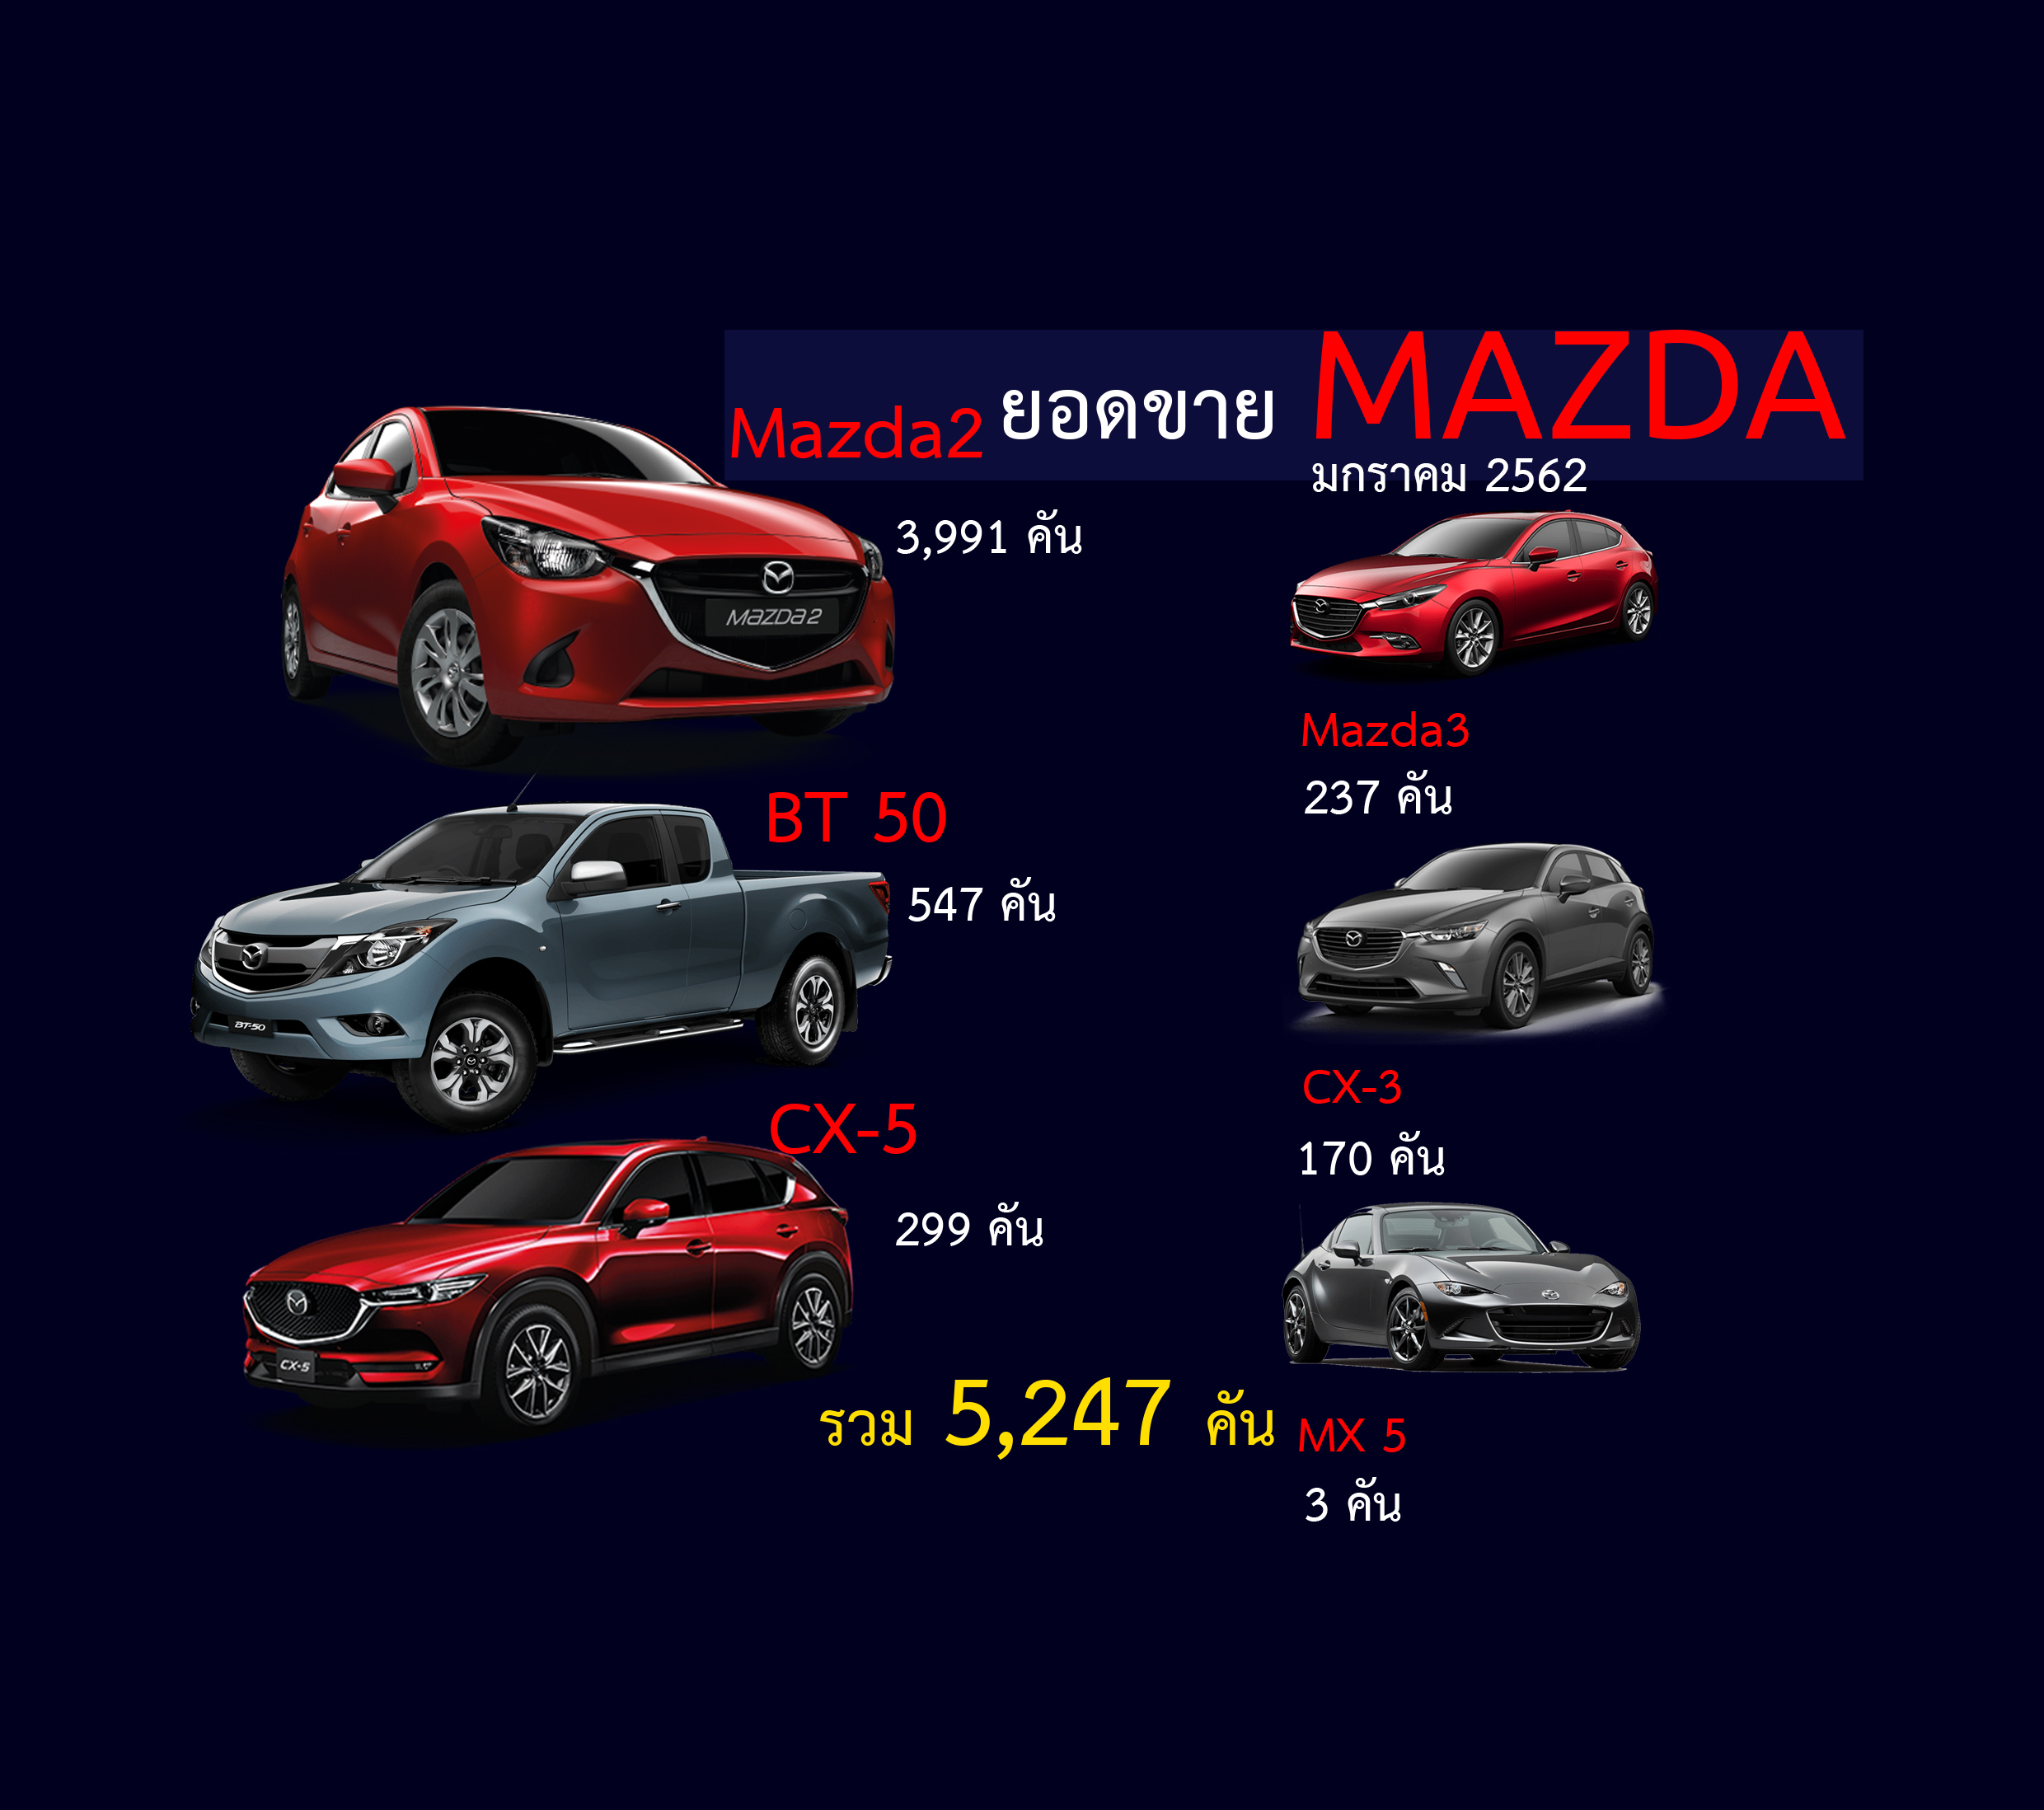 Mazda รับปีหมูเดือนมกราคม 62 ยอดขาย 5,247 คัน! มาสด้า 2 ยังขายดี